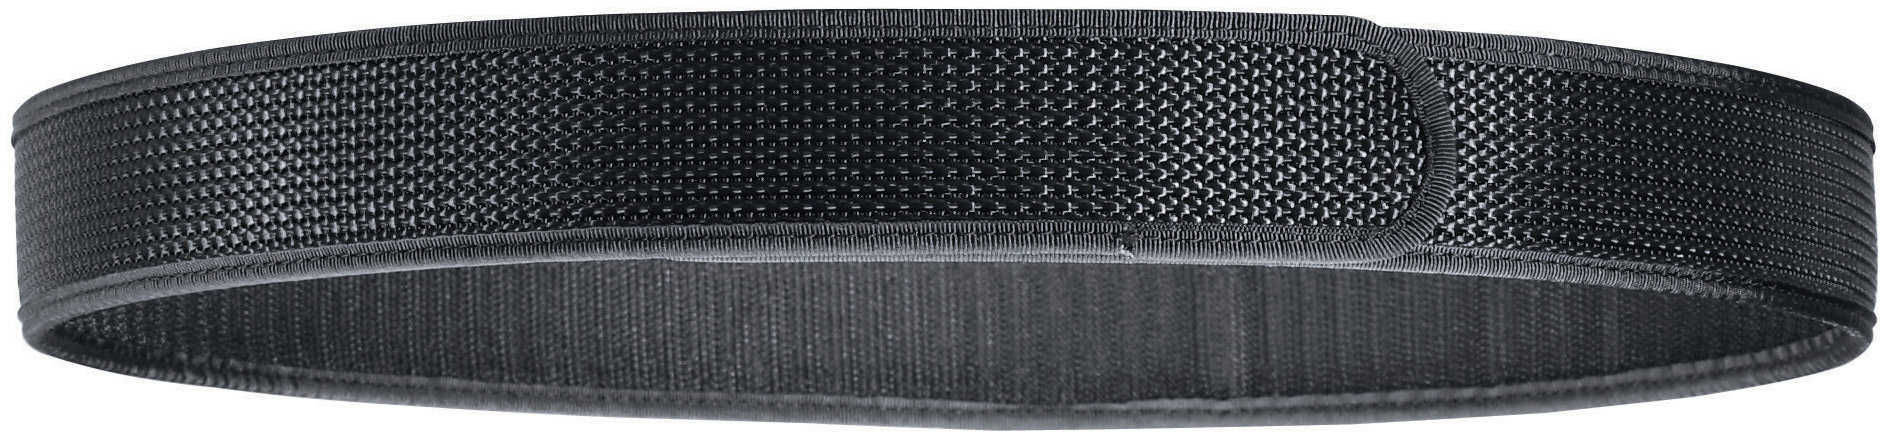 BIANCHI Belt Liner XLG Black 17709